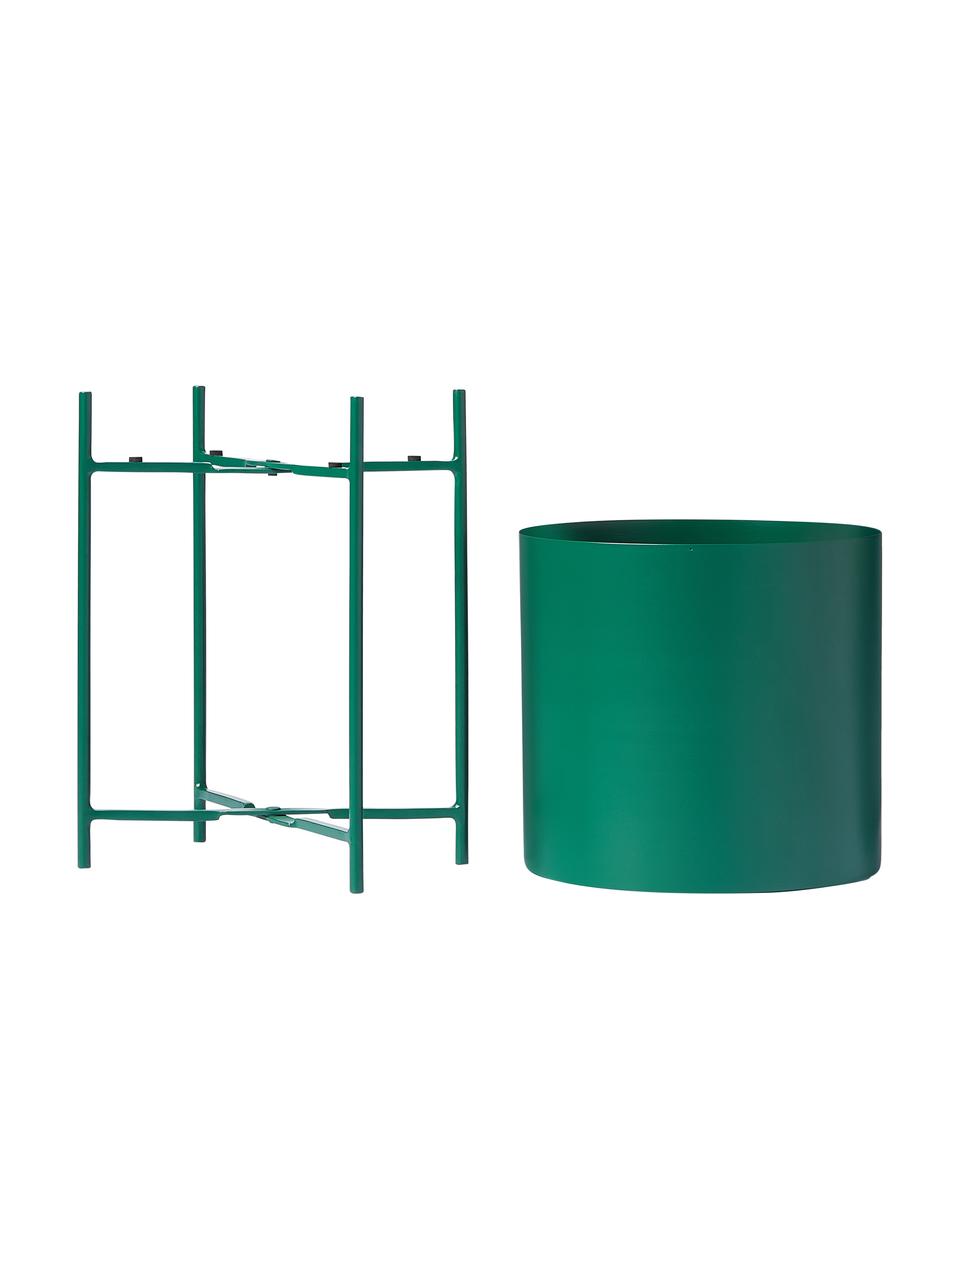 Übertopf-Set Mina aus Metall, 2-tlg., Metall, pulverbeschichtet, Grün, Set mit verschiedenen Größen